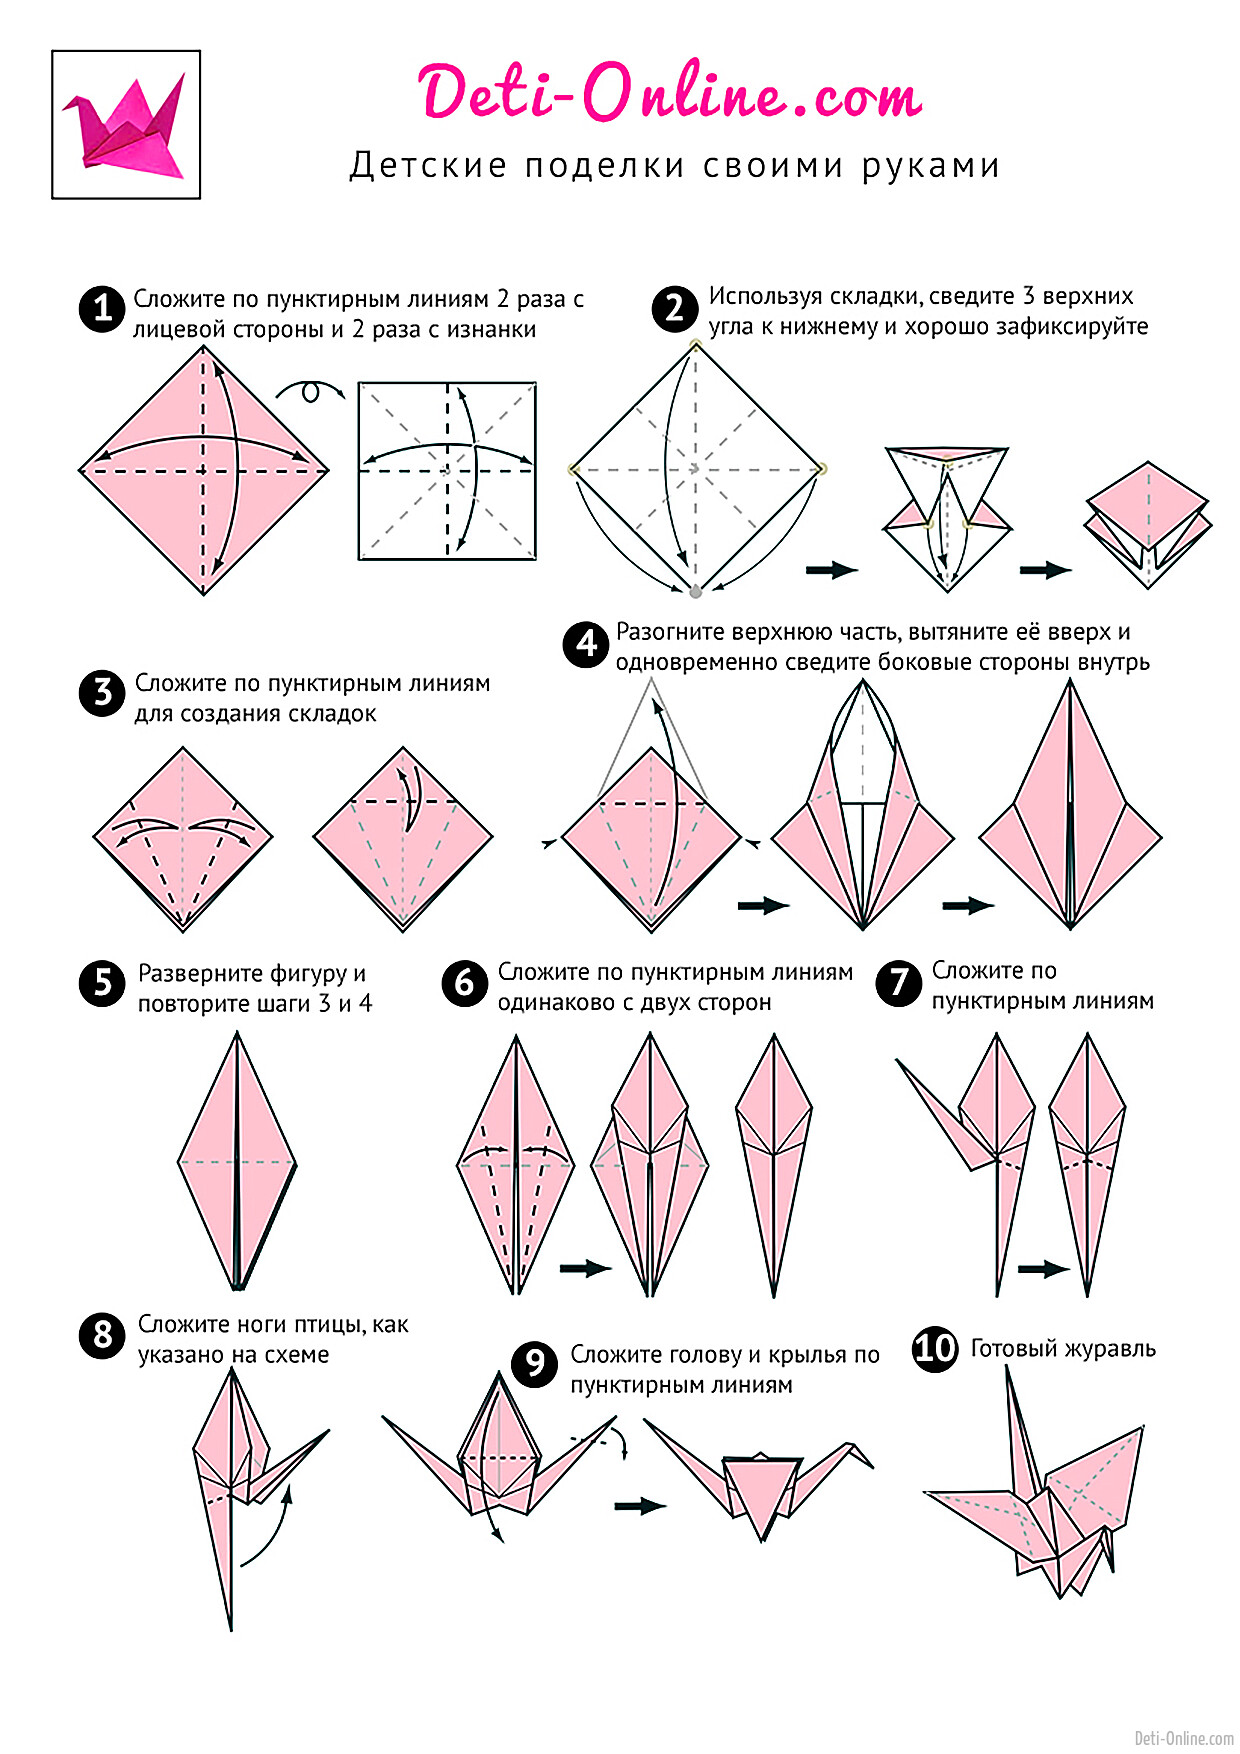 Как сделать журавлика поэтапно. Журавлик из бумаги схема складывания. Как сделать журавлика из бумаги. Схема журавлика оригами простая для детей. Как сделать журавлика из бумаги пошаговая инструкция.